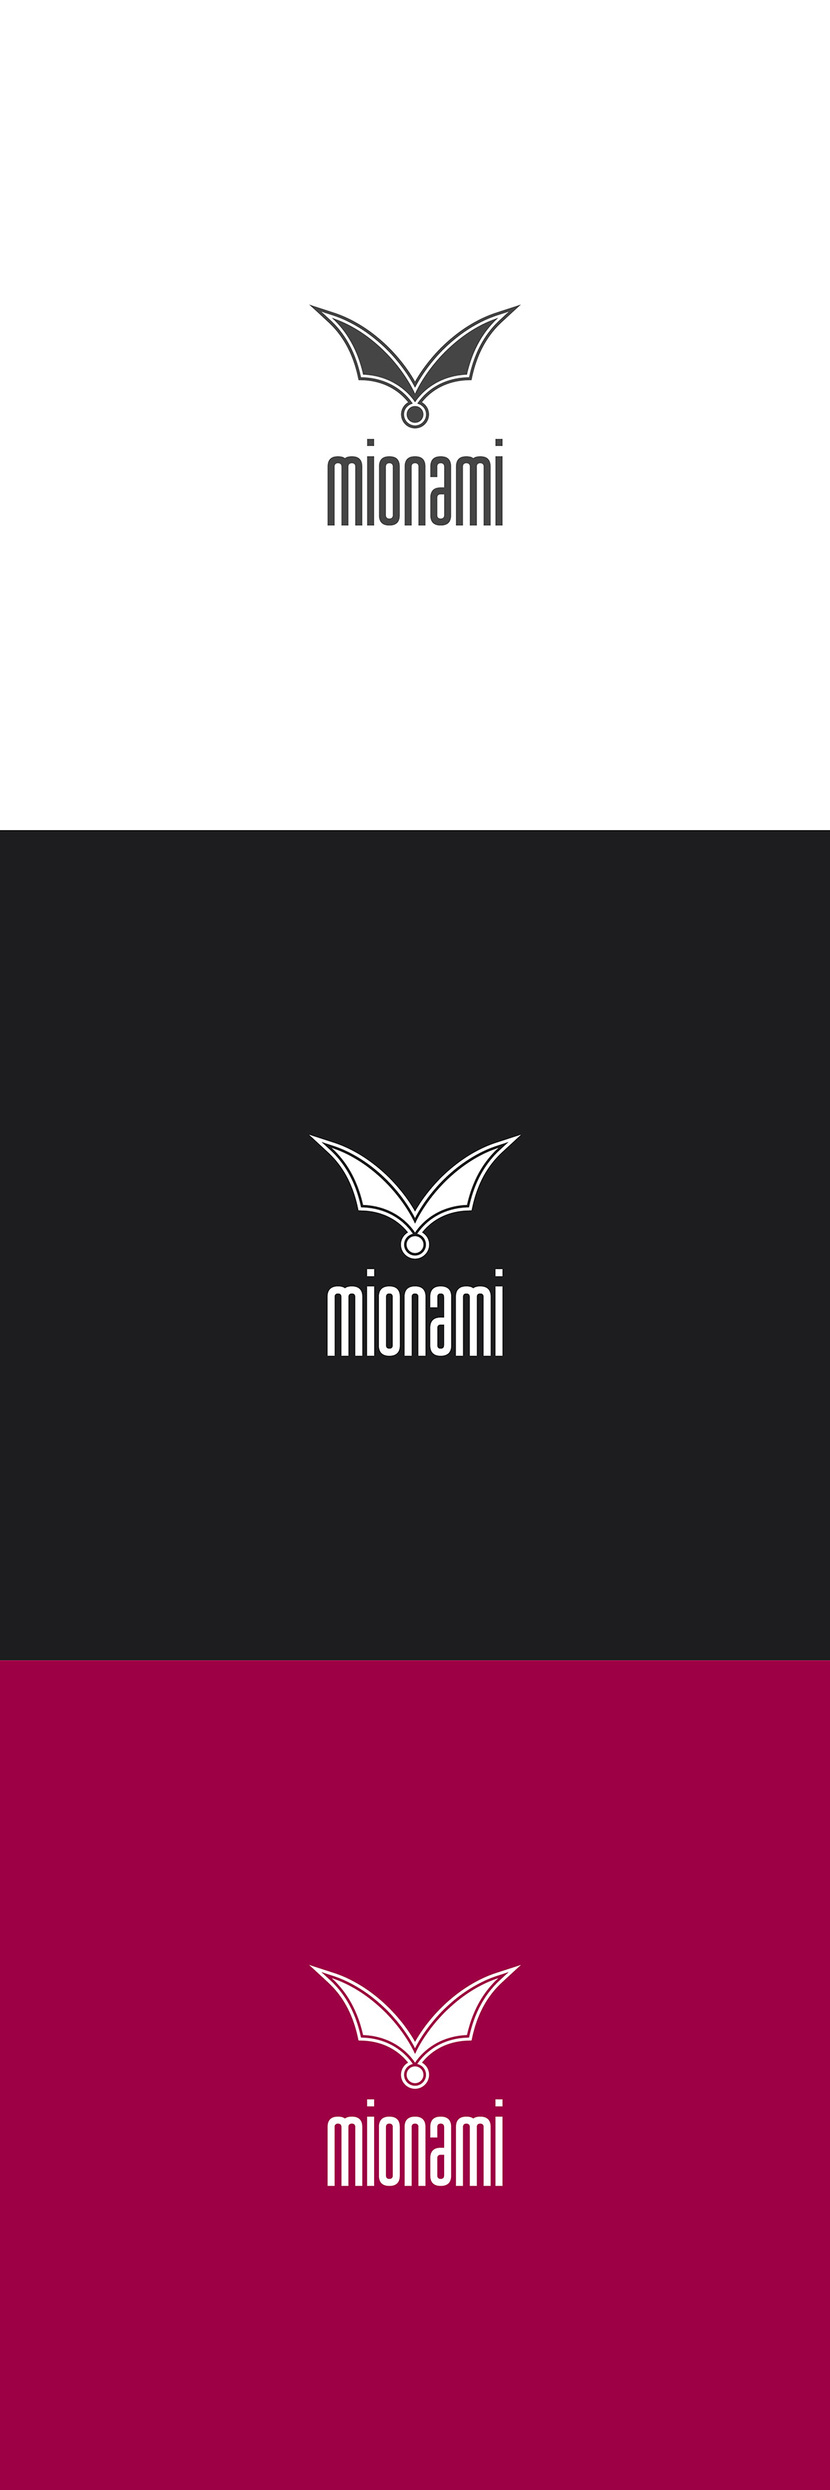 Необходимо разработать логотип для молодого бренда одежды MIONAMI  -  автор Федор Ващилов